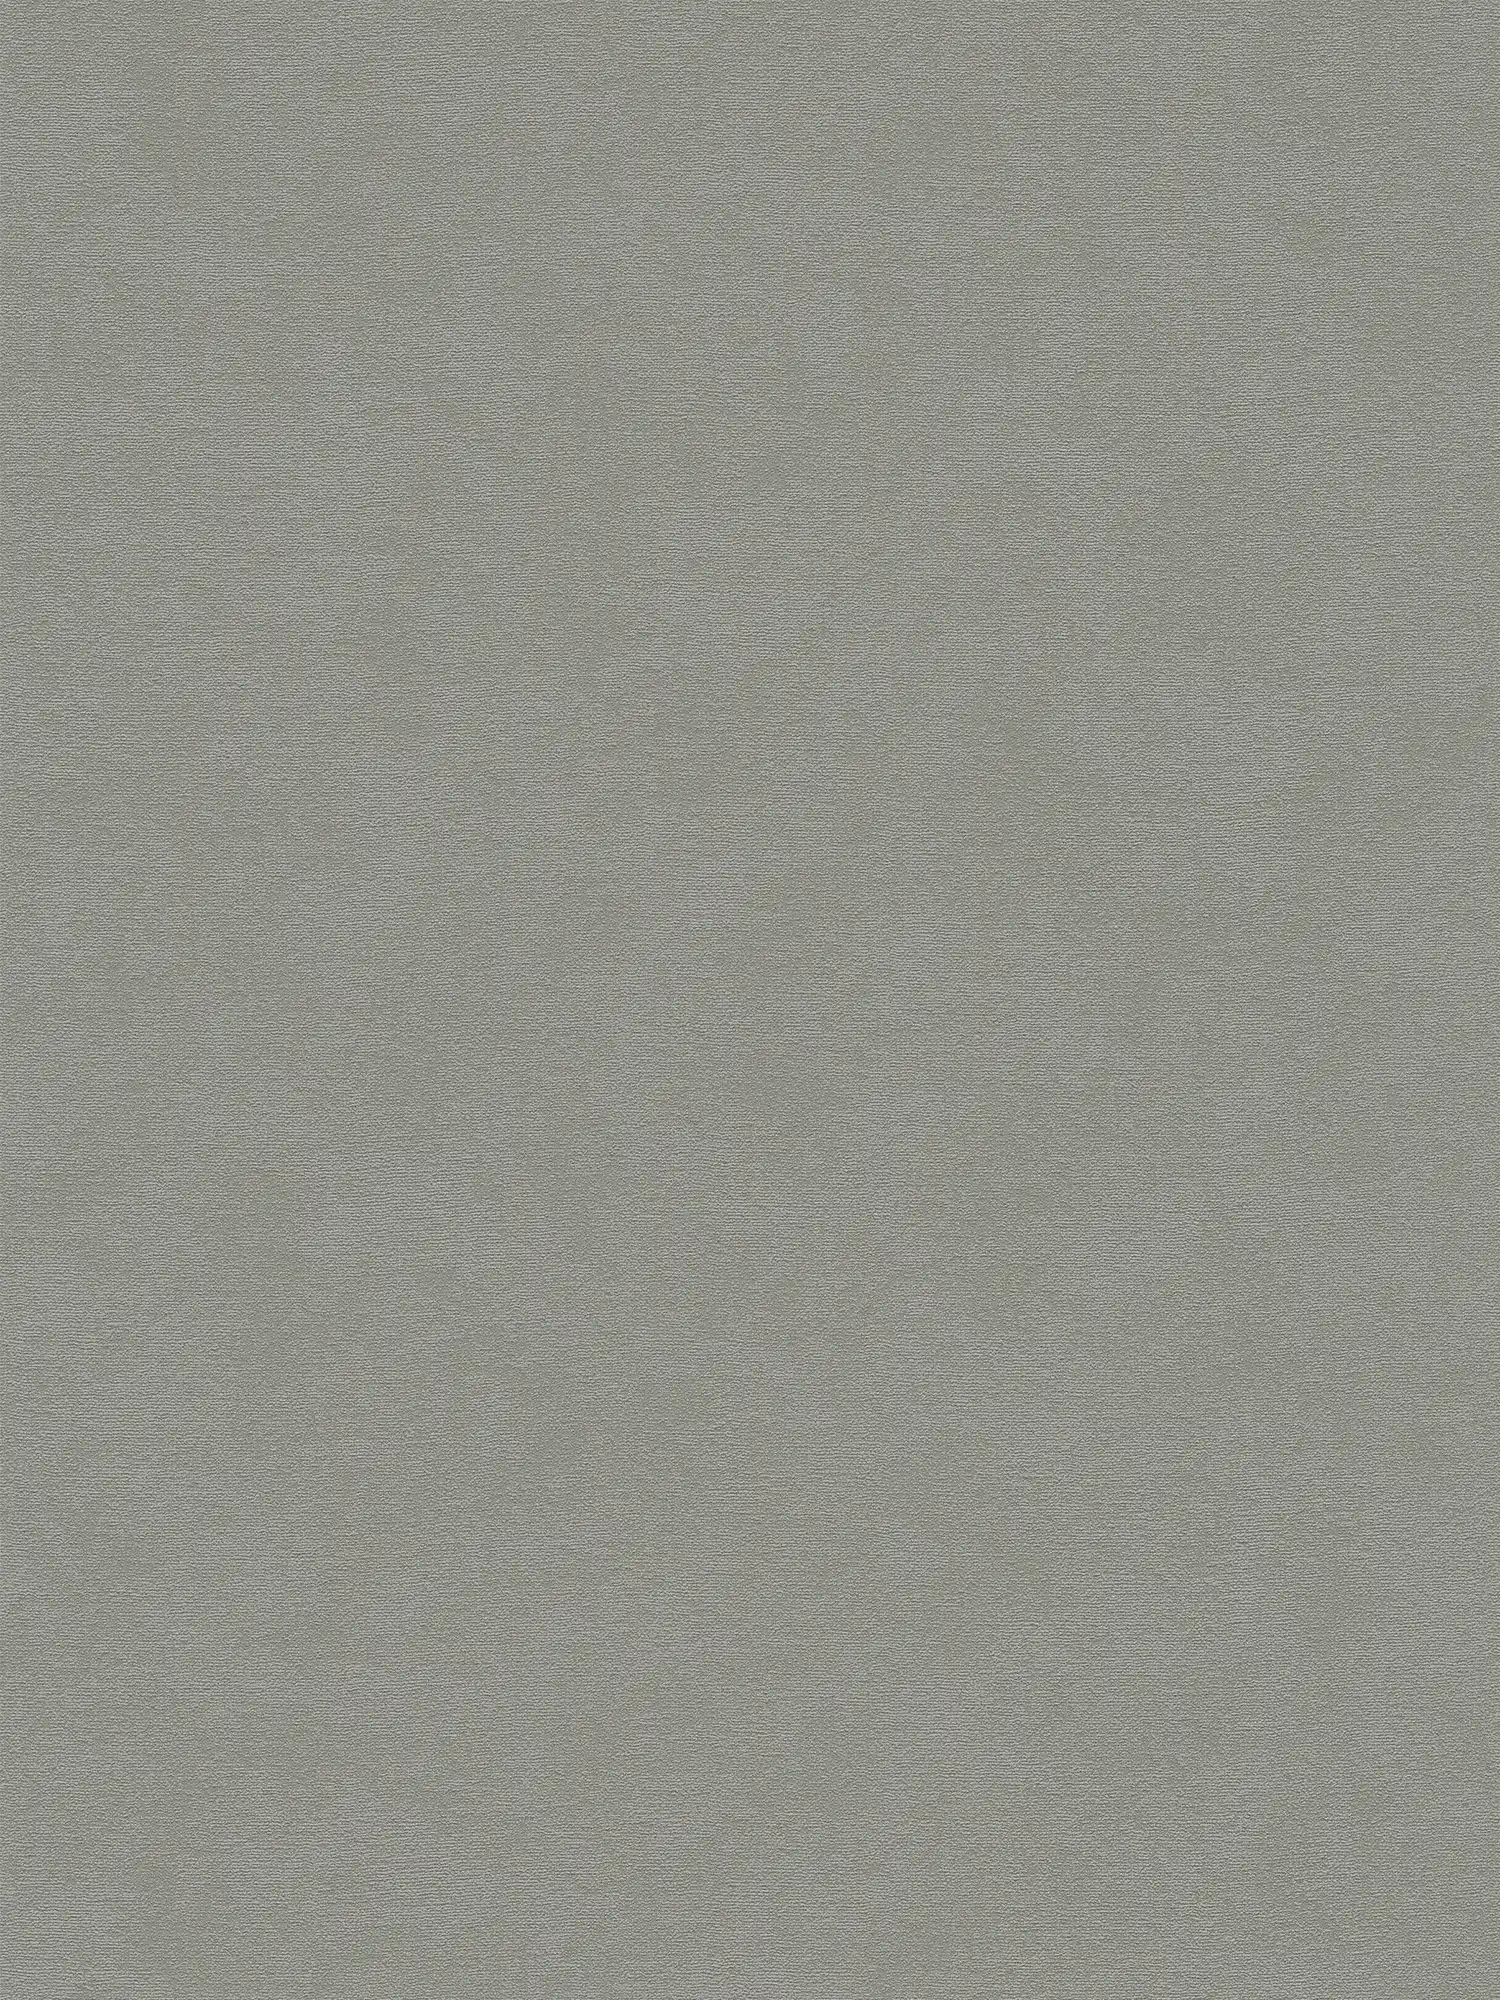 Non-woven wallpaper single-coloured surface fine textured - grey
